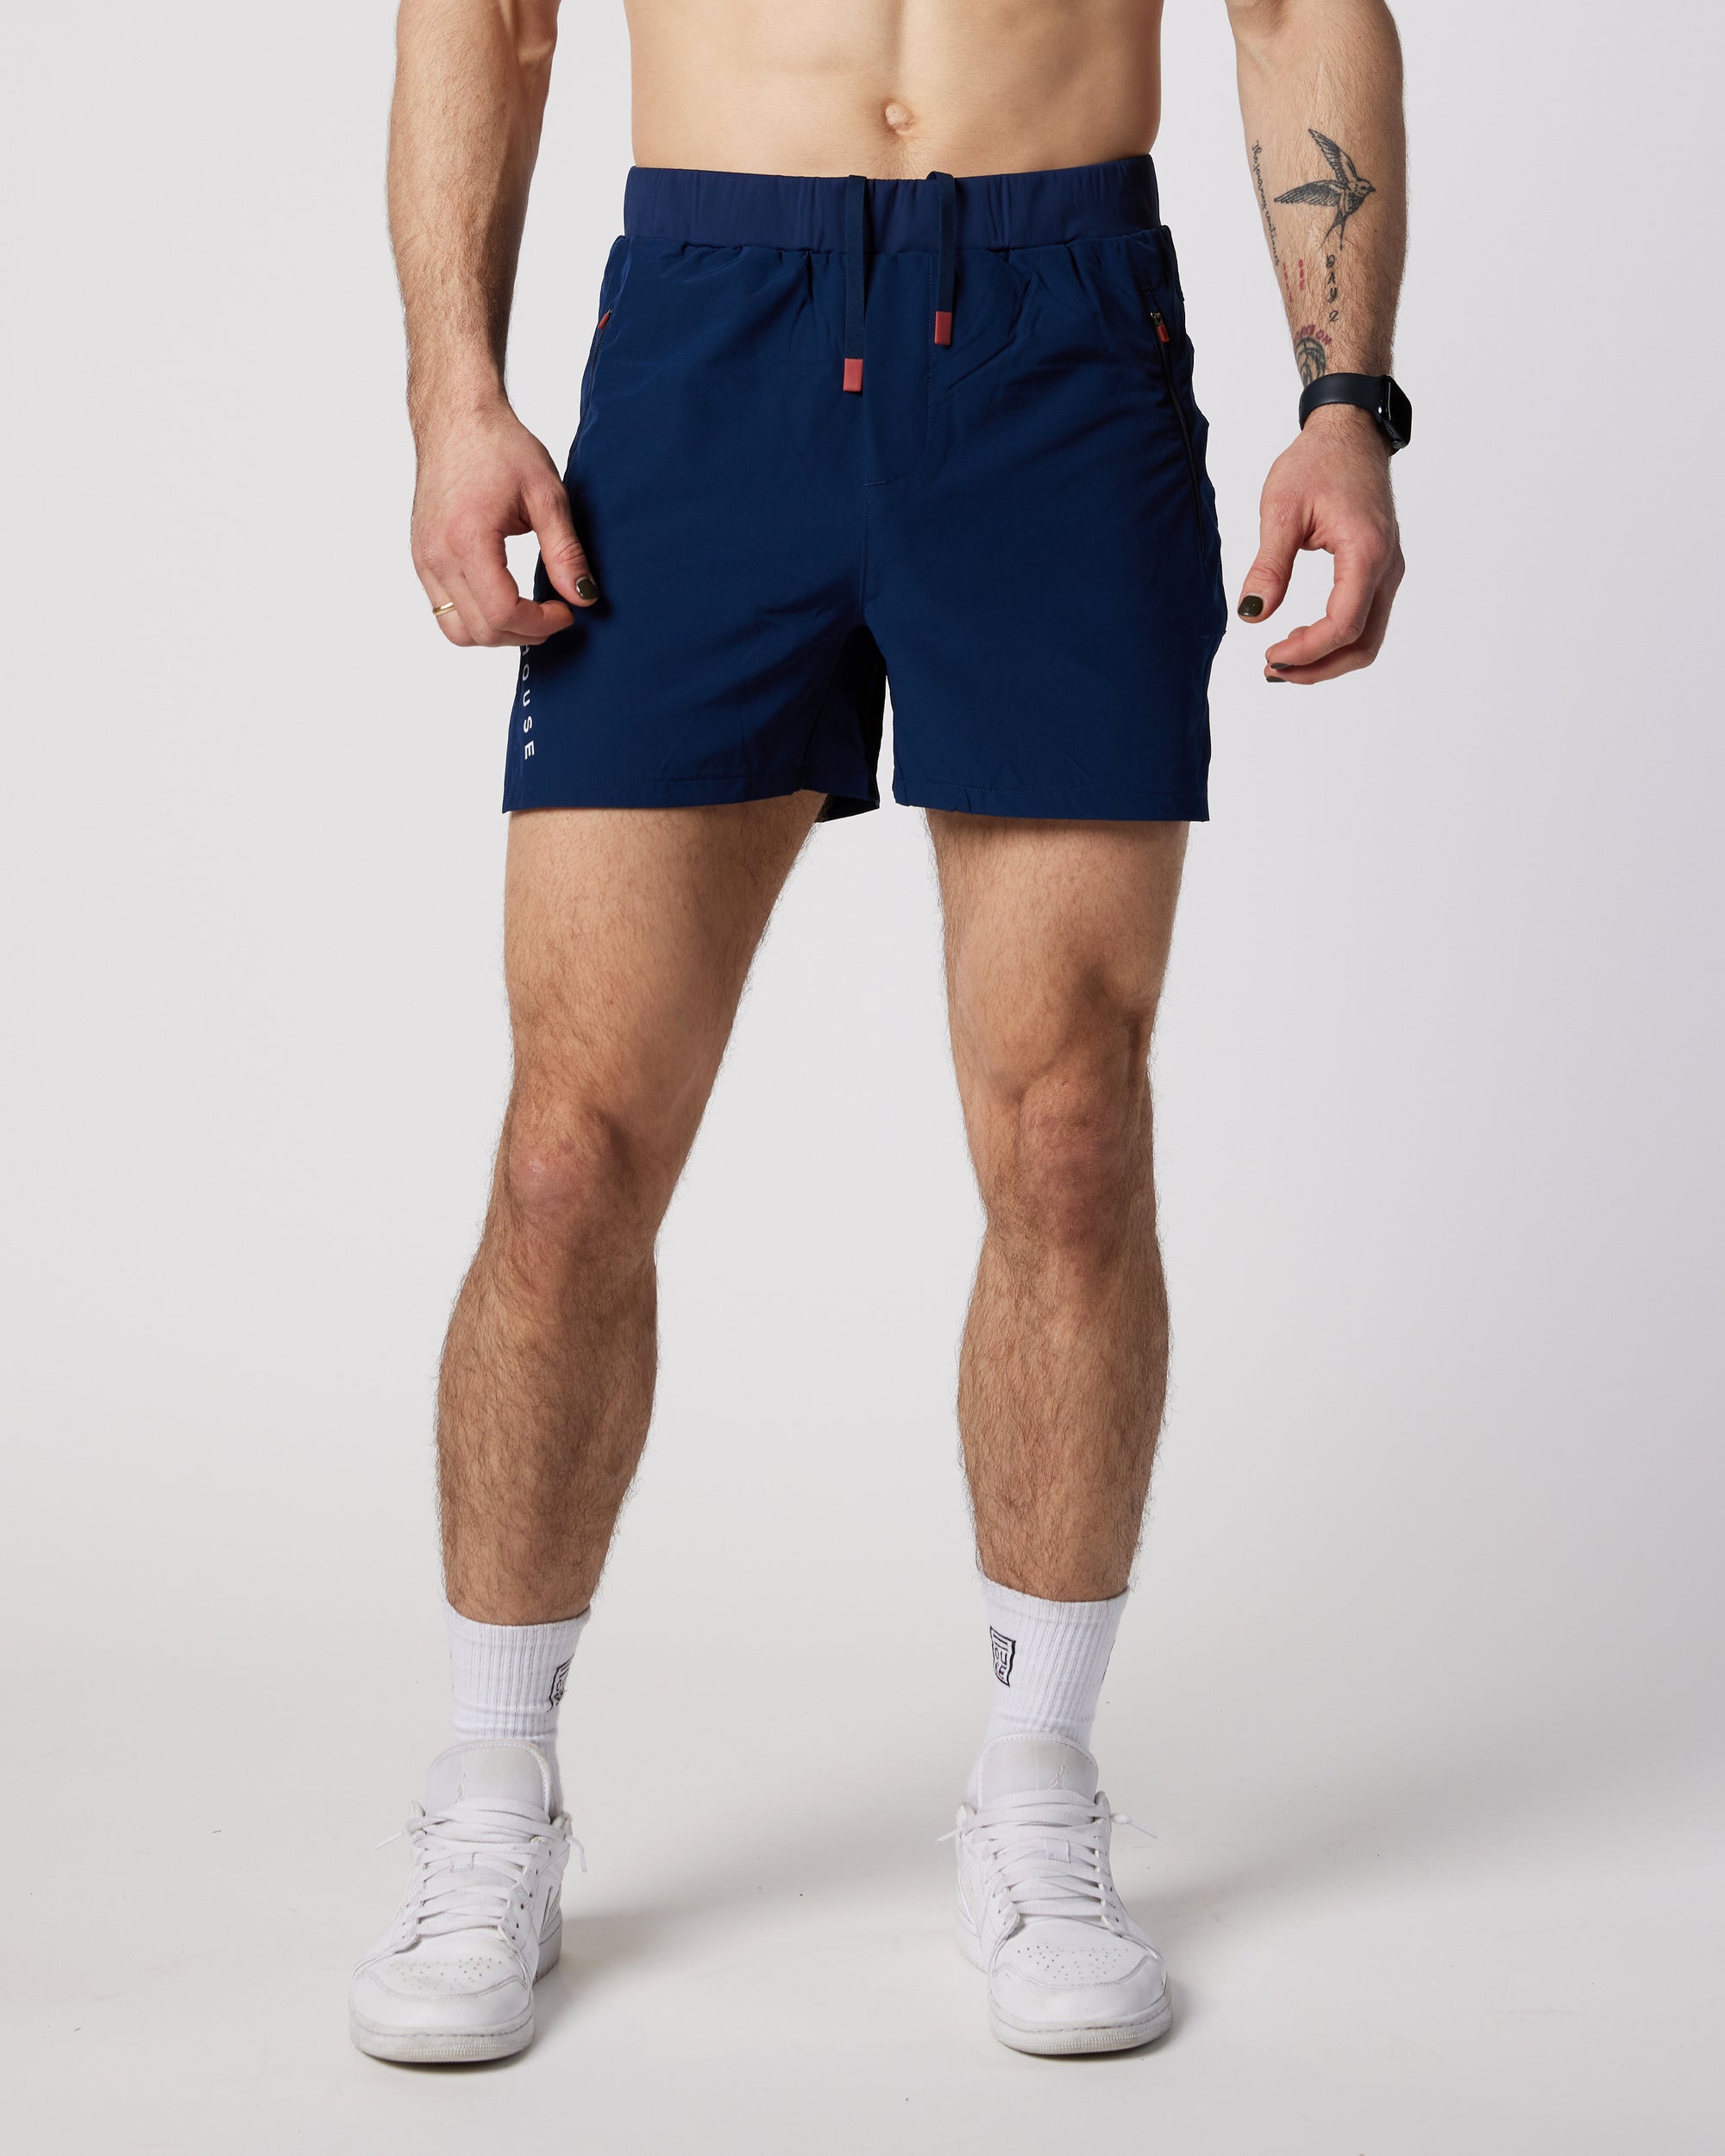 Mens navy shorts shorts